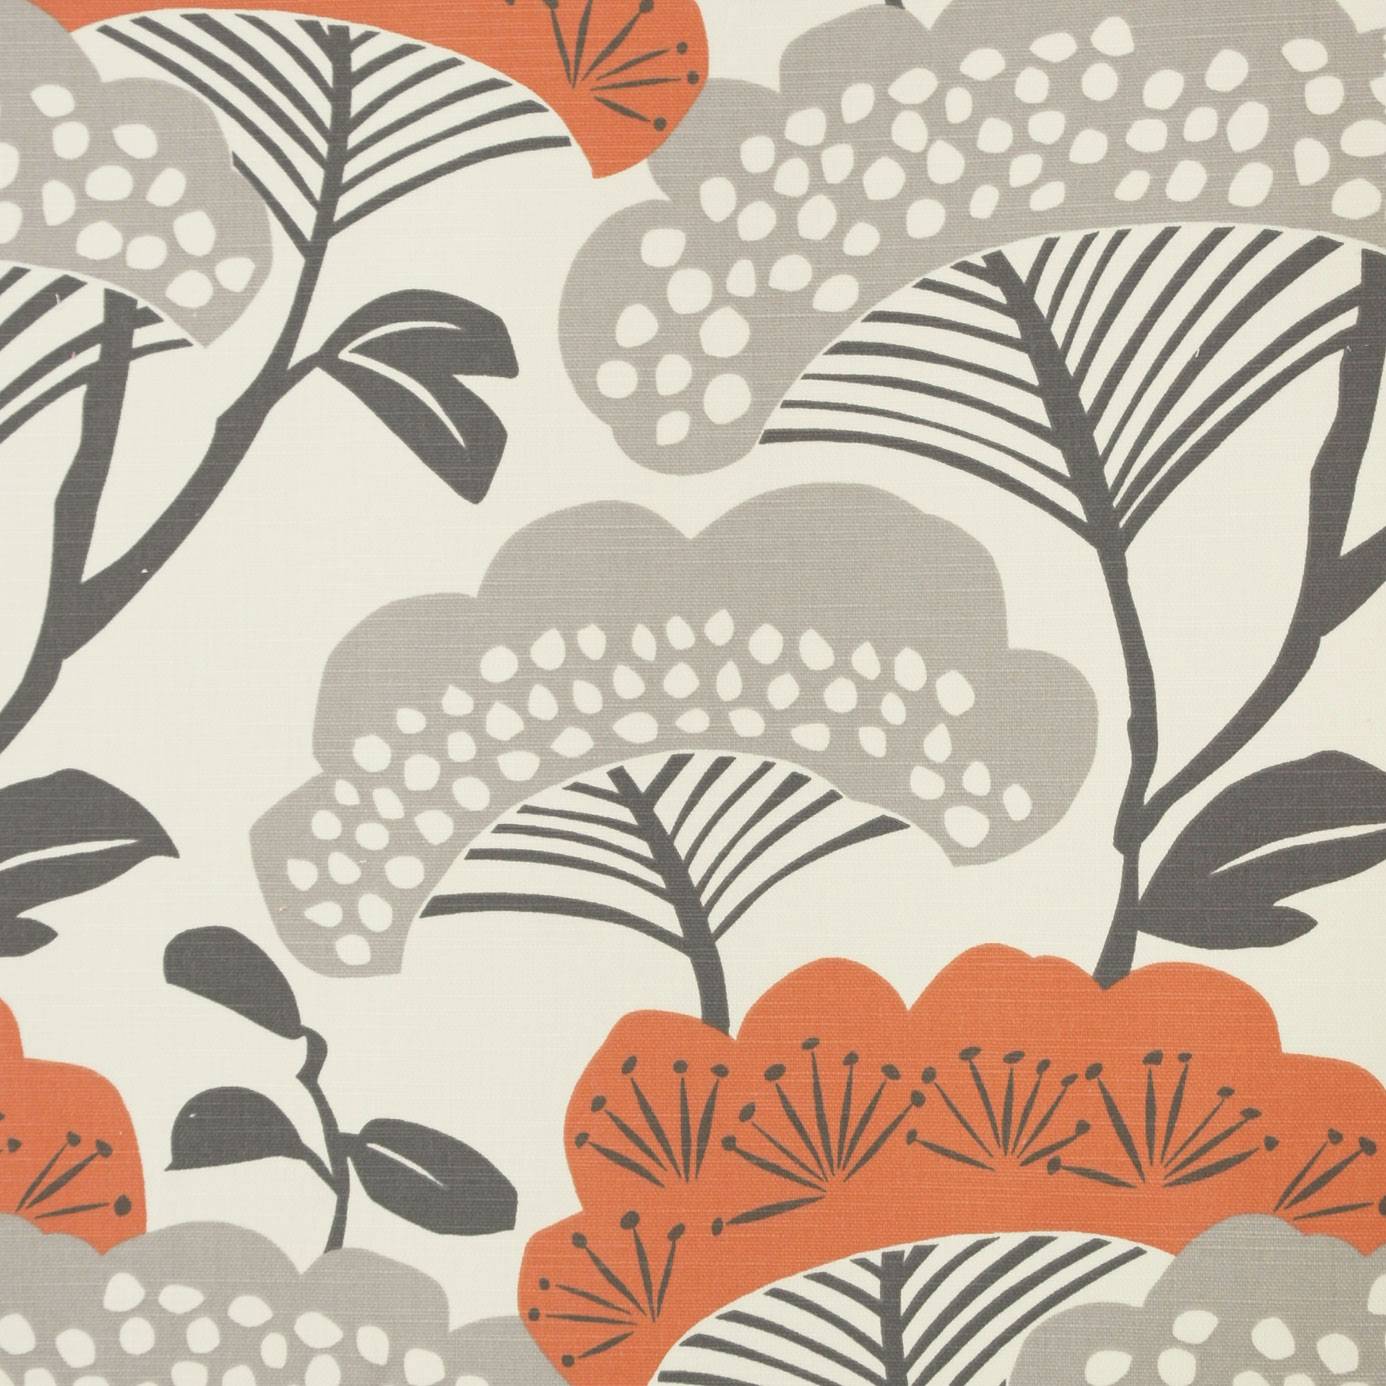 サンダーソン壁紙クリアランス,オレンジ,葉,パターン,ライン,設計